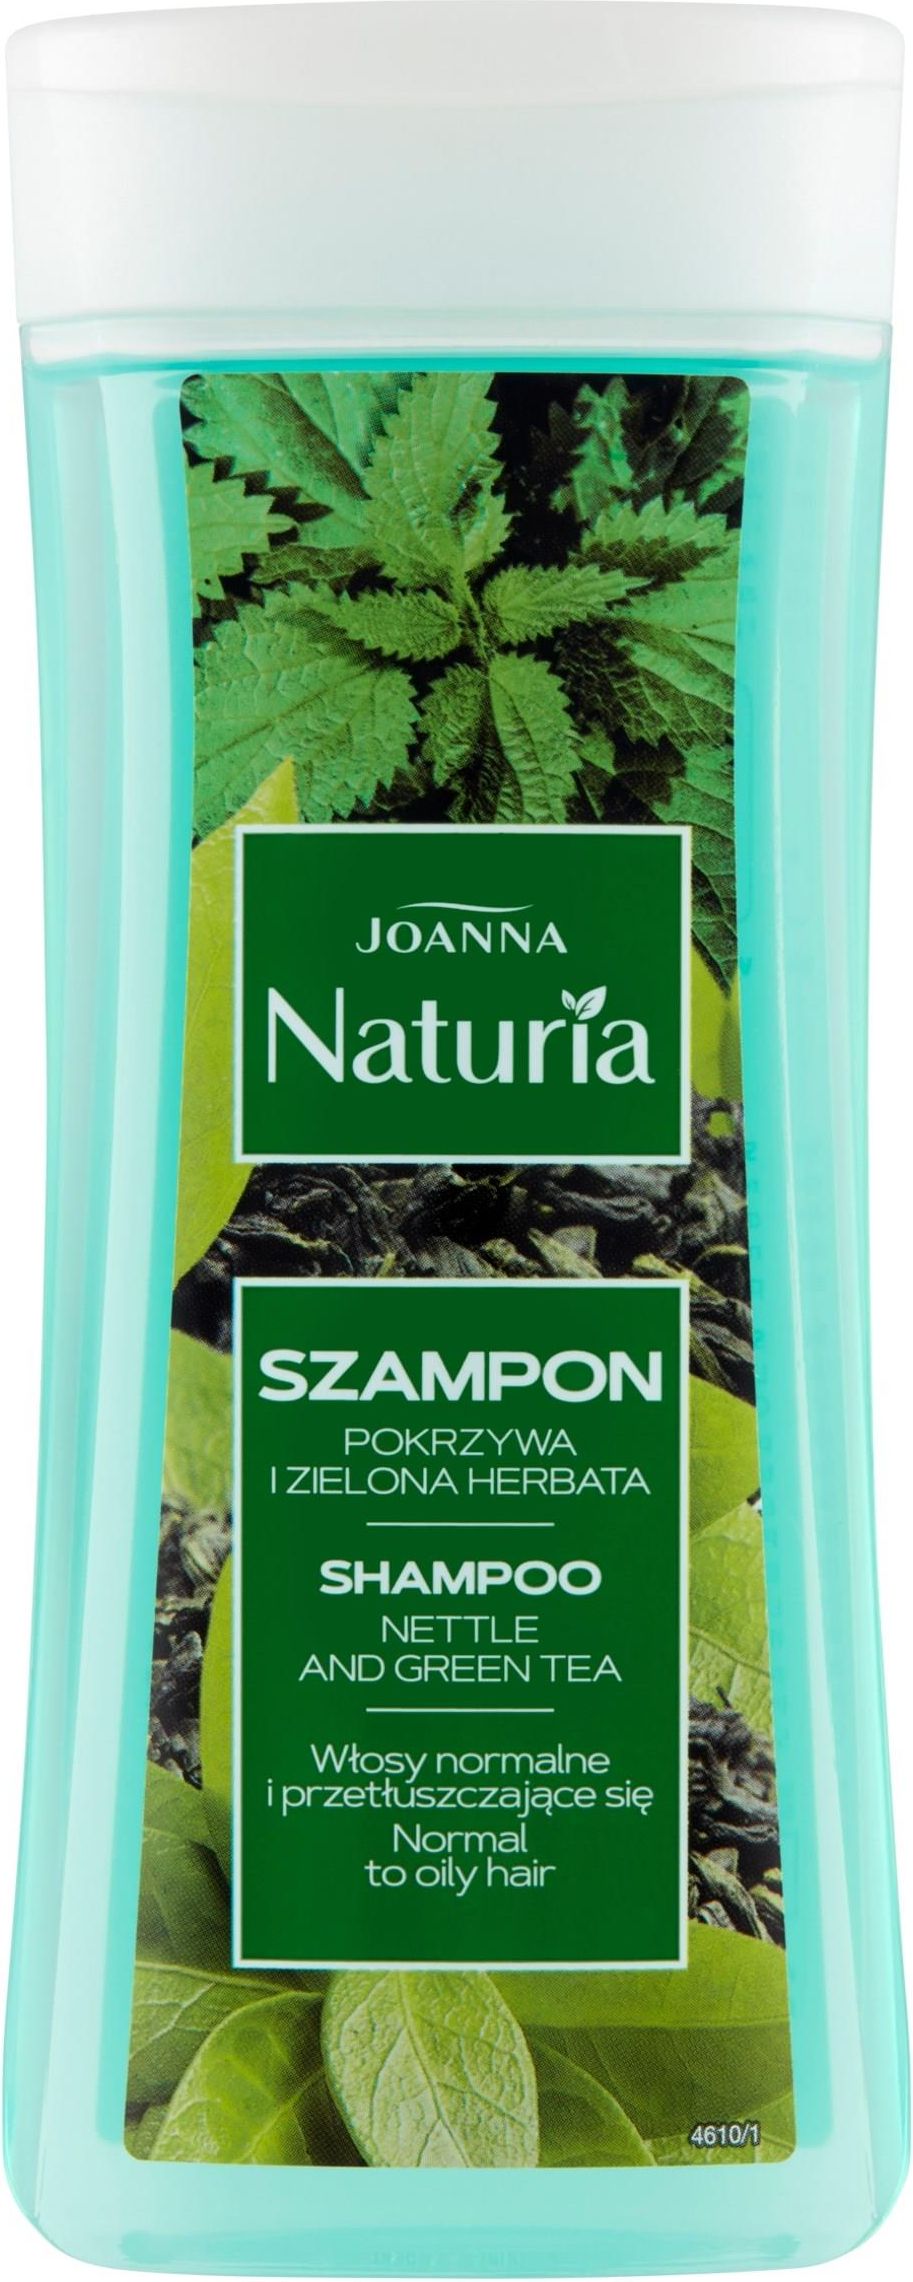 bania agafii rokitnikowy szampon objętość włosów puszystość i blask blog